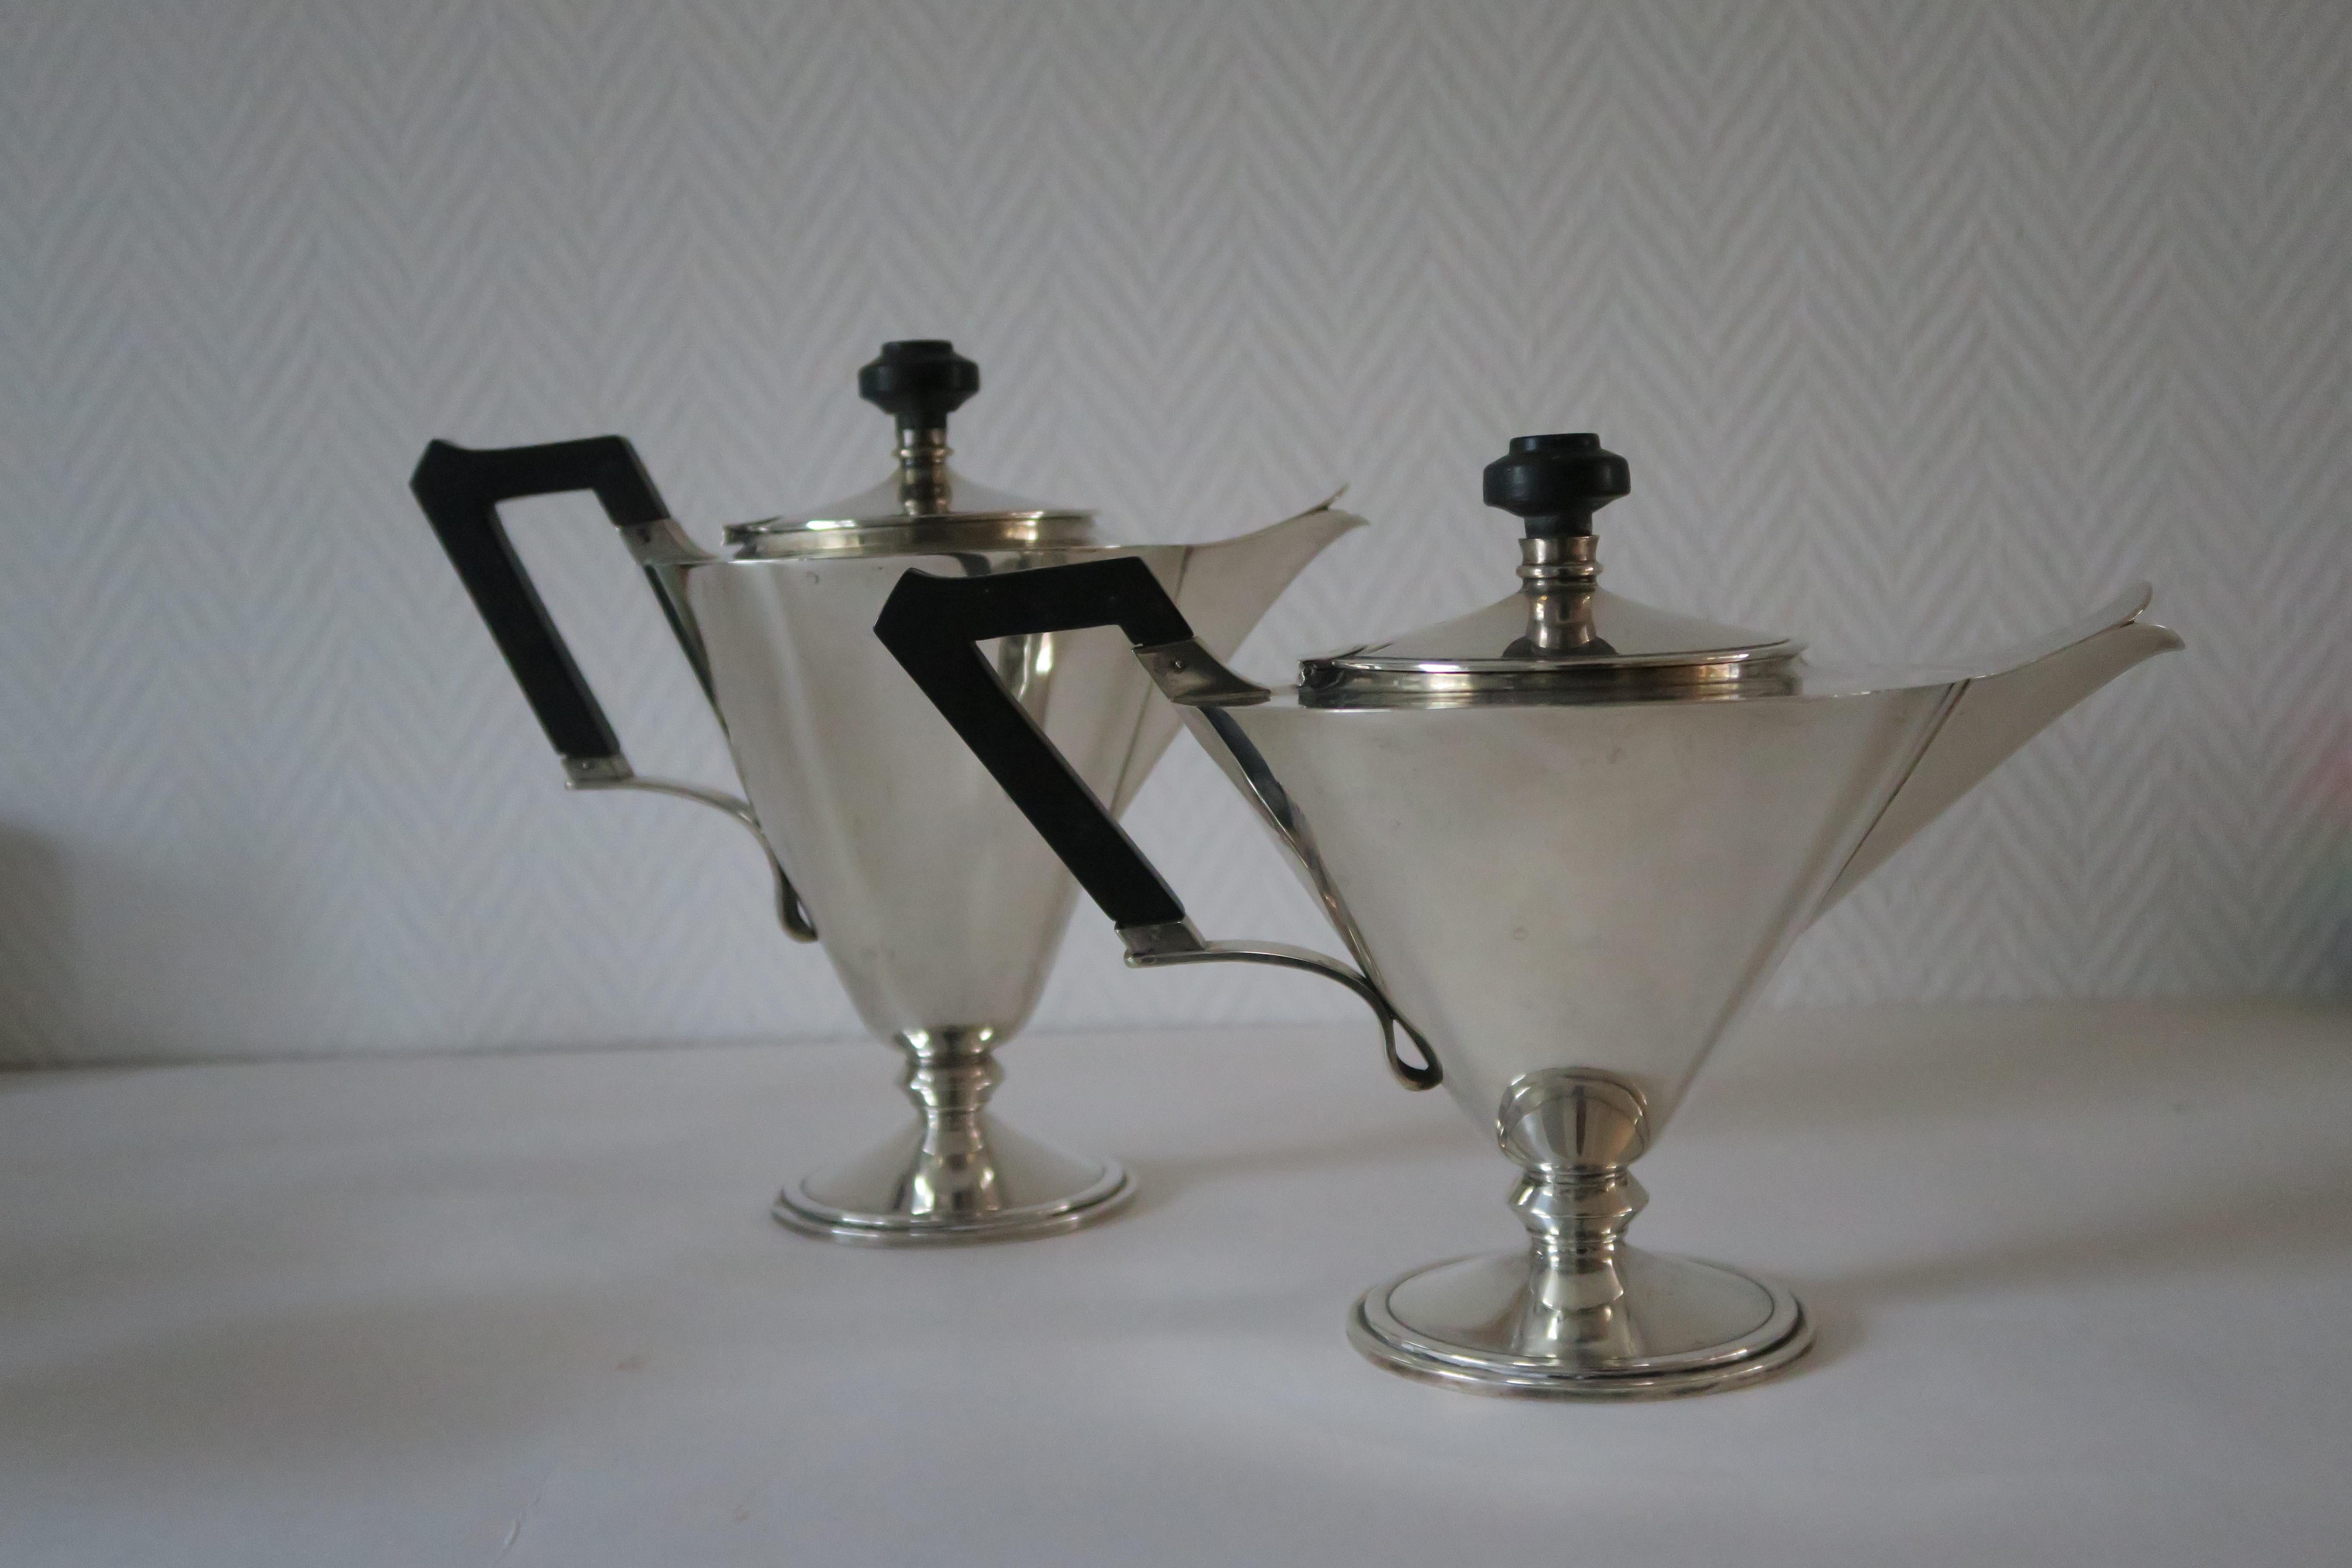 Ein Kaffee- und Teeservice mit Zuckerkanne und Milchkännchen
Alle Stücke sind aus Sterling Silber gefertigt
mit Bakelitgriffen
alle Stücke markiert Fr Veniziani Milano Firenze 900
